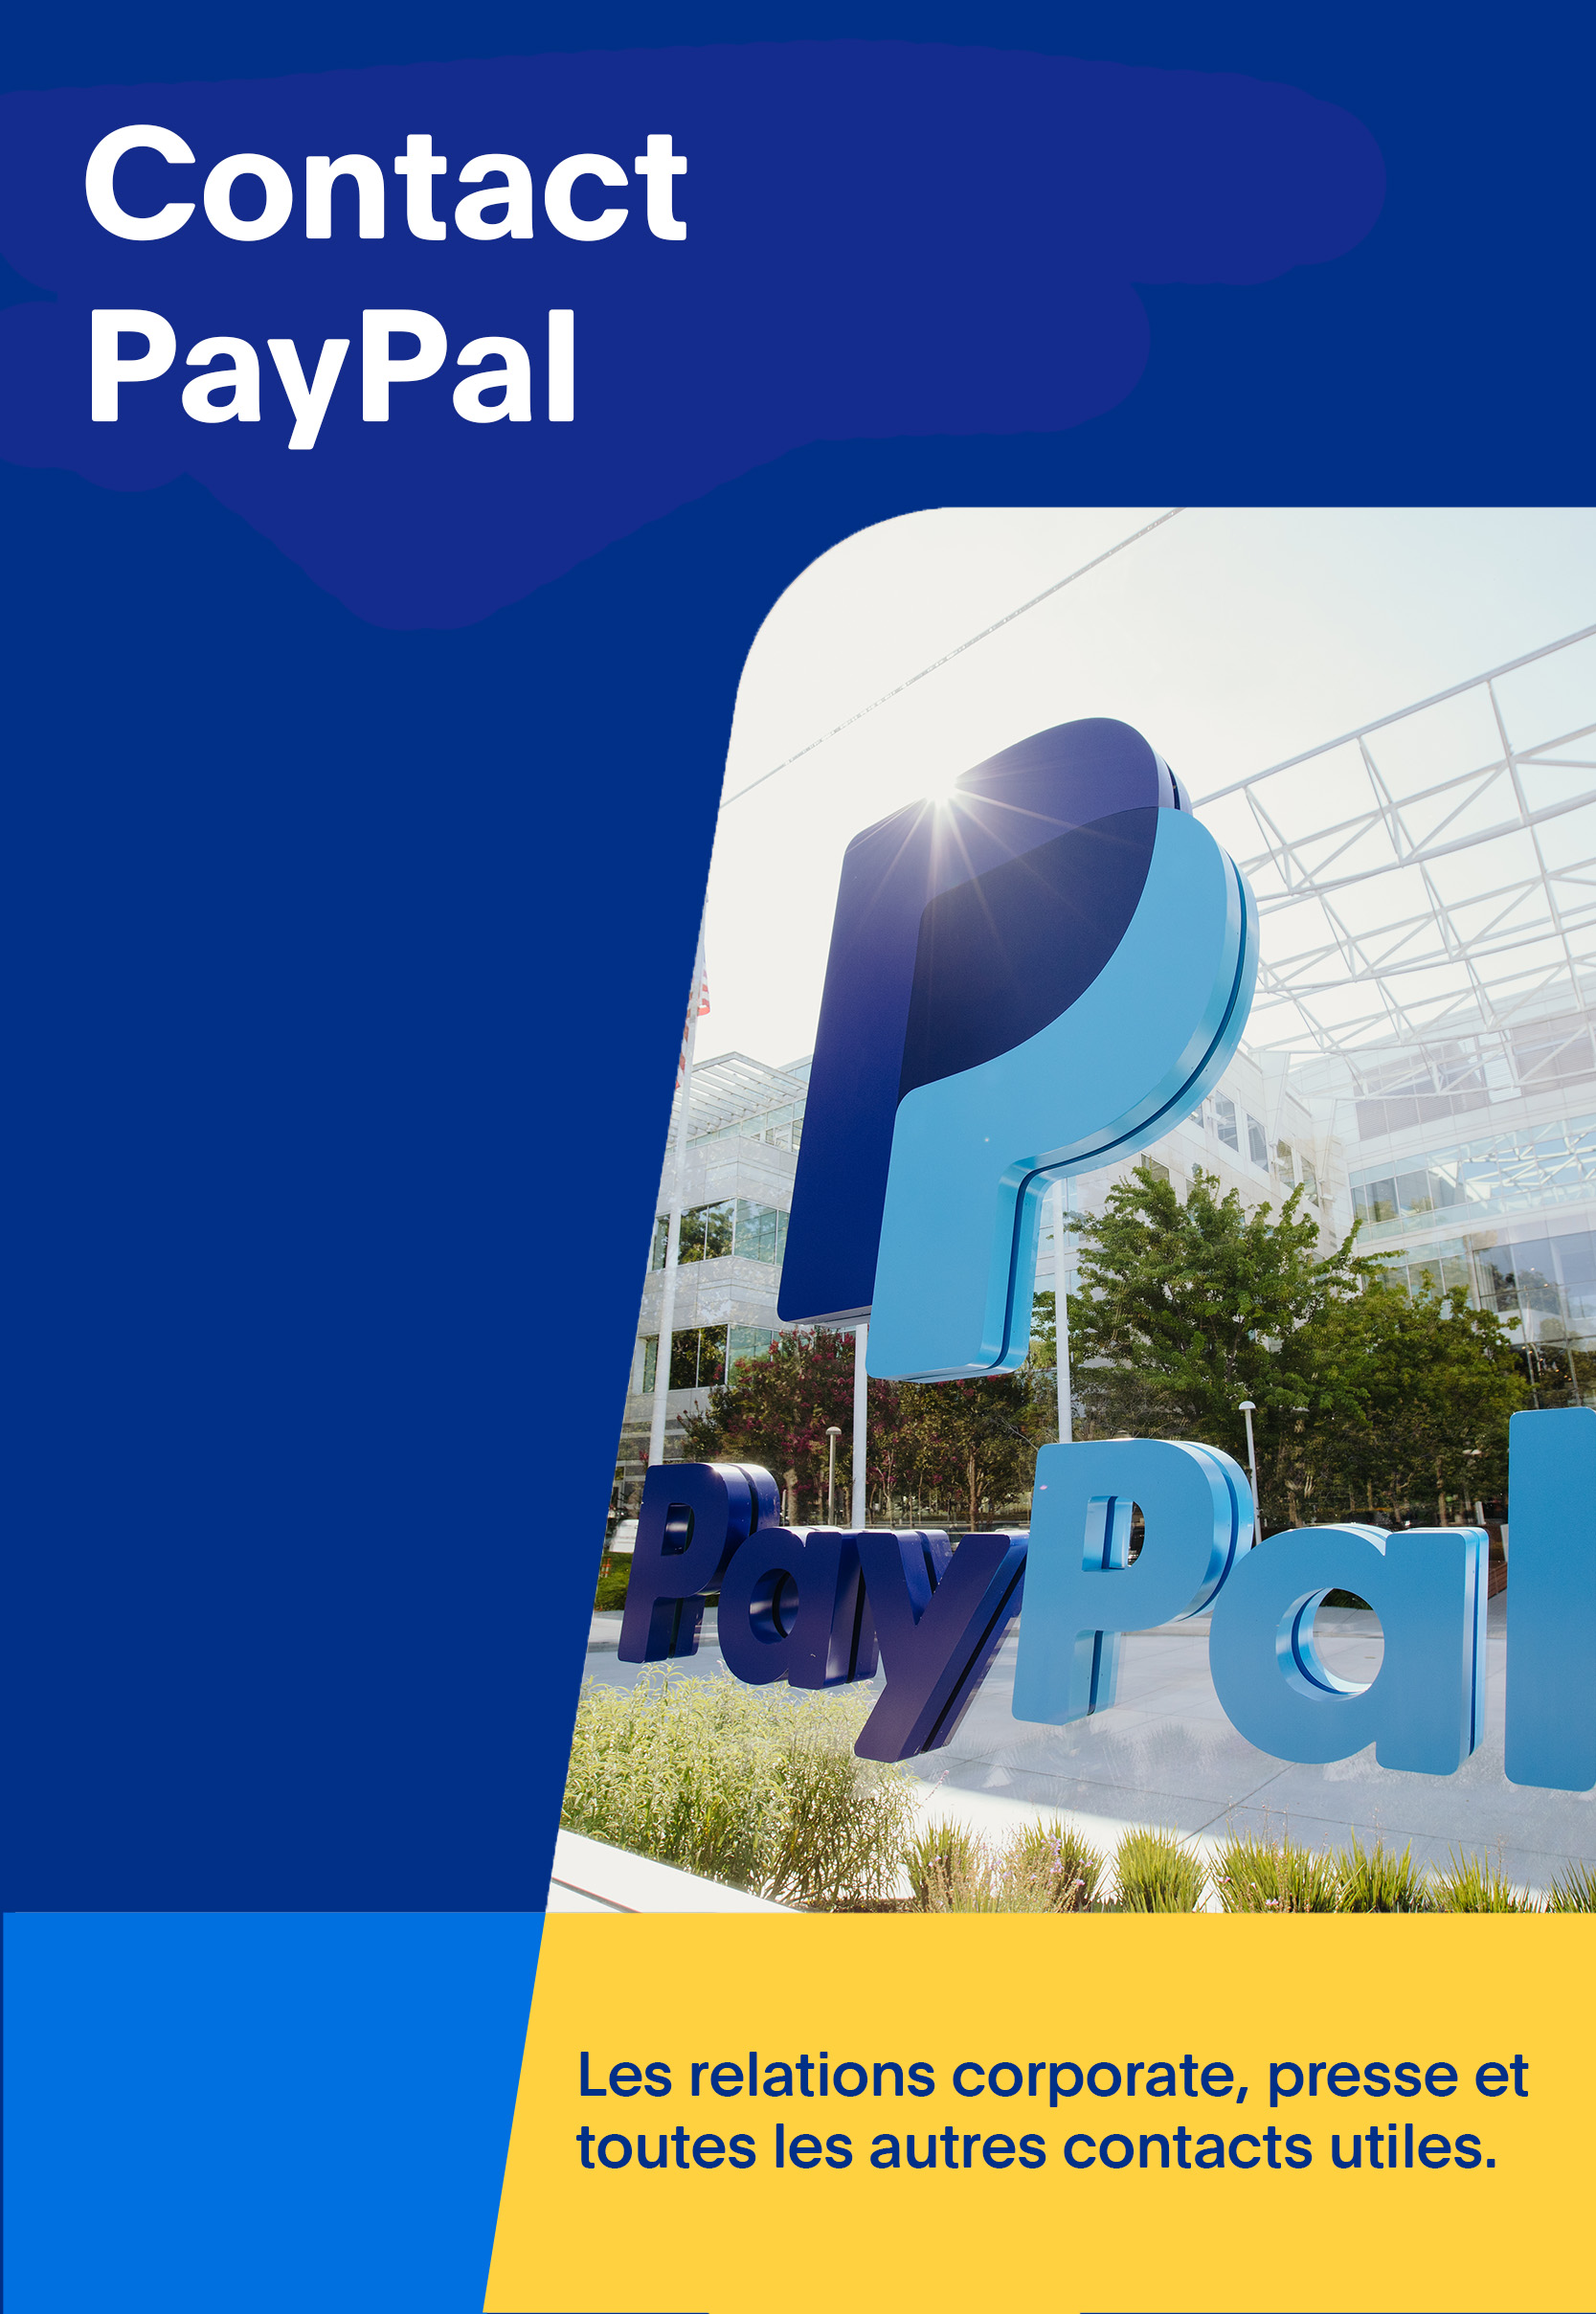 Contact PayPal: Ouvrir dans un nouvel onglet